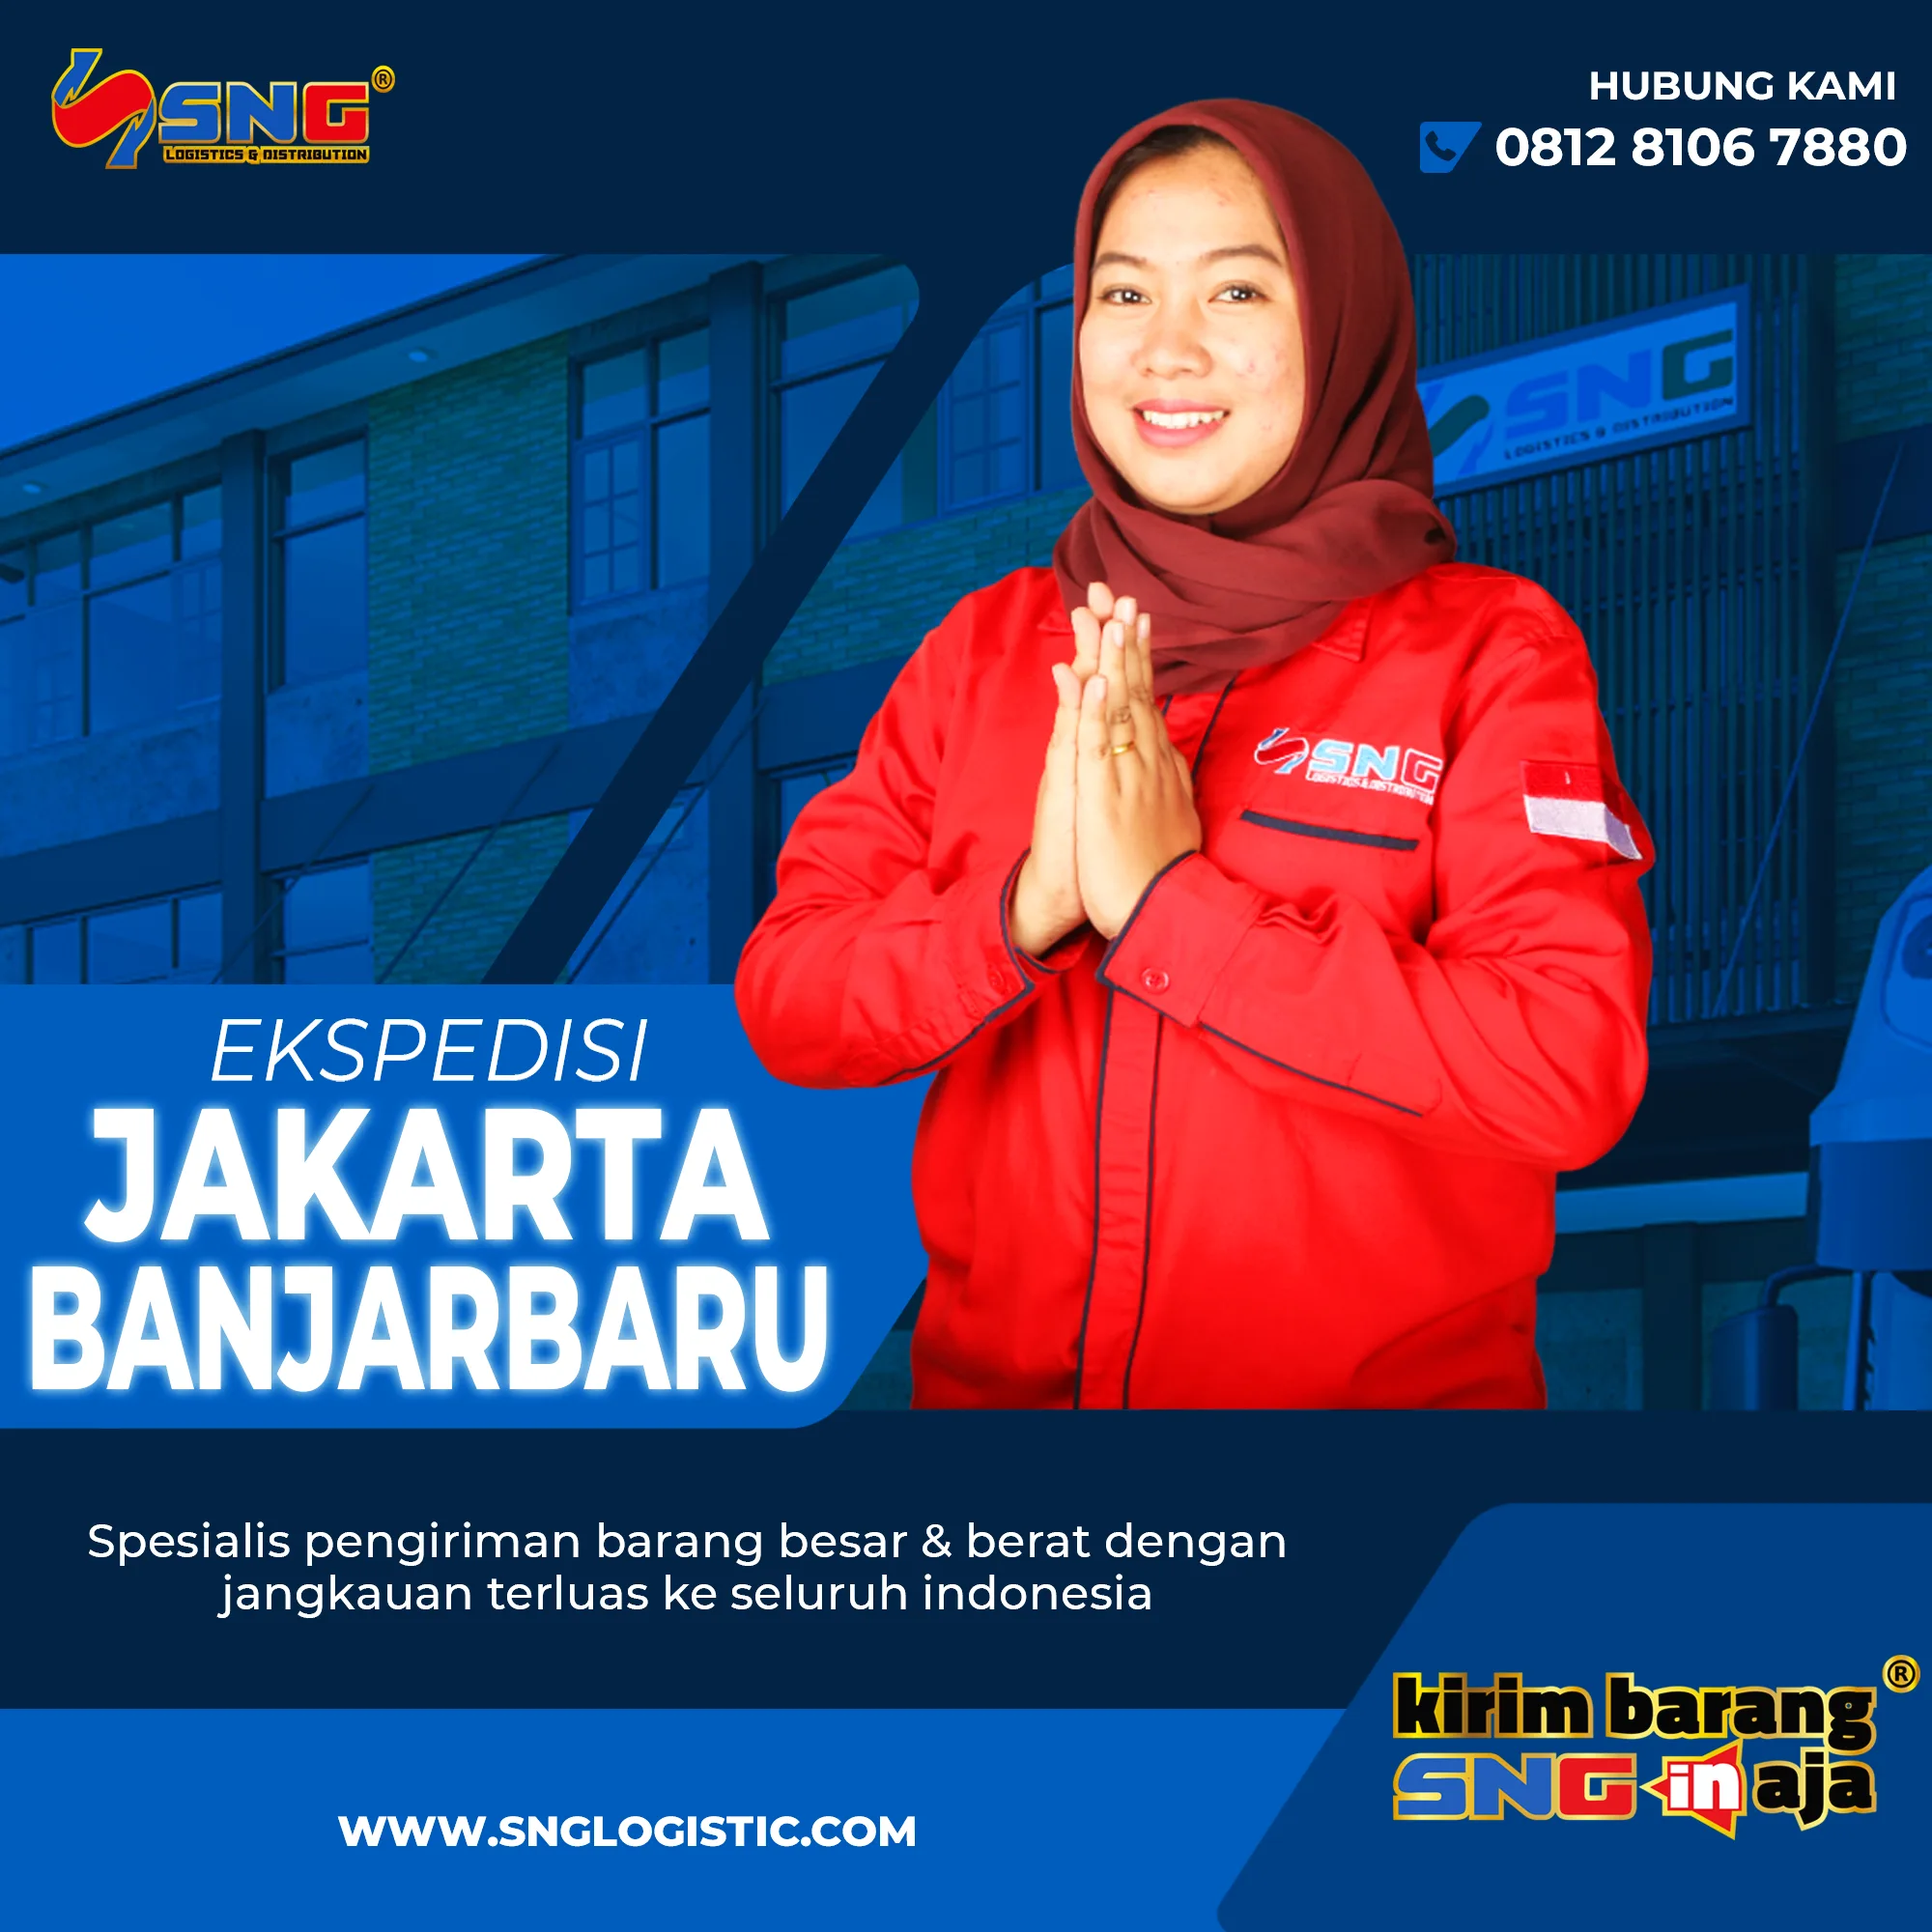 Ekspedisi Jakarta Banjarbaru